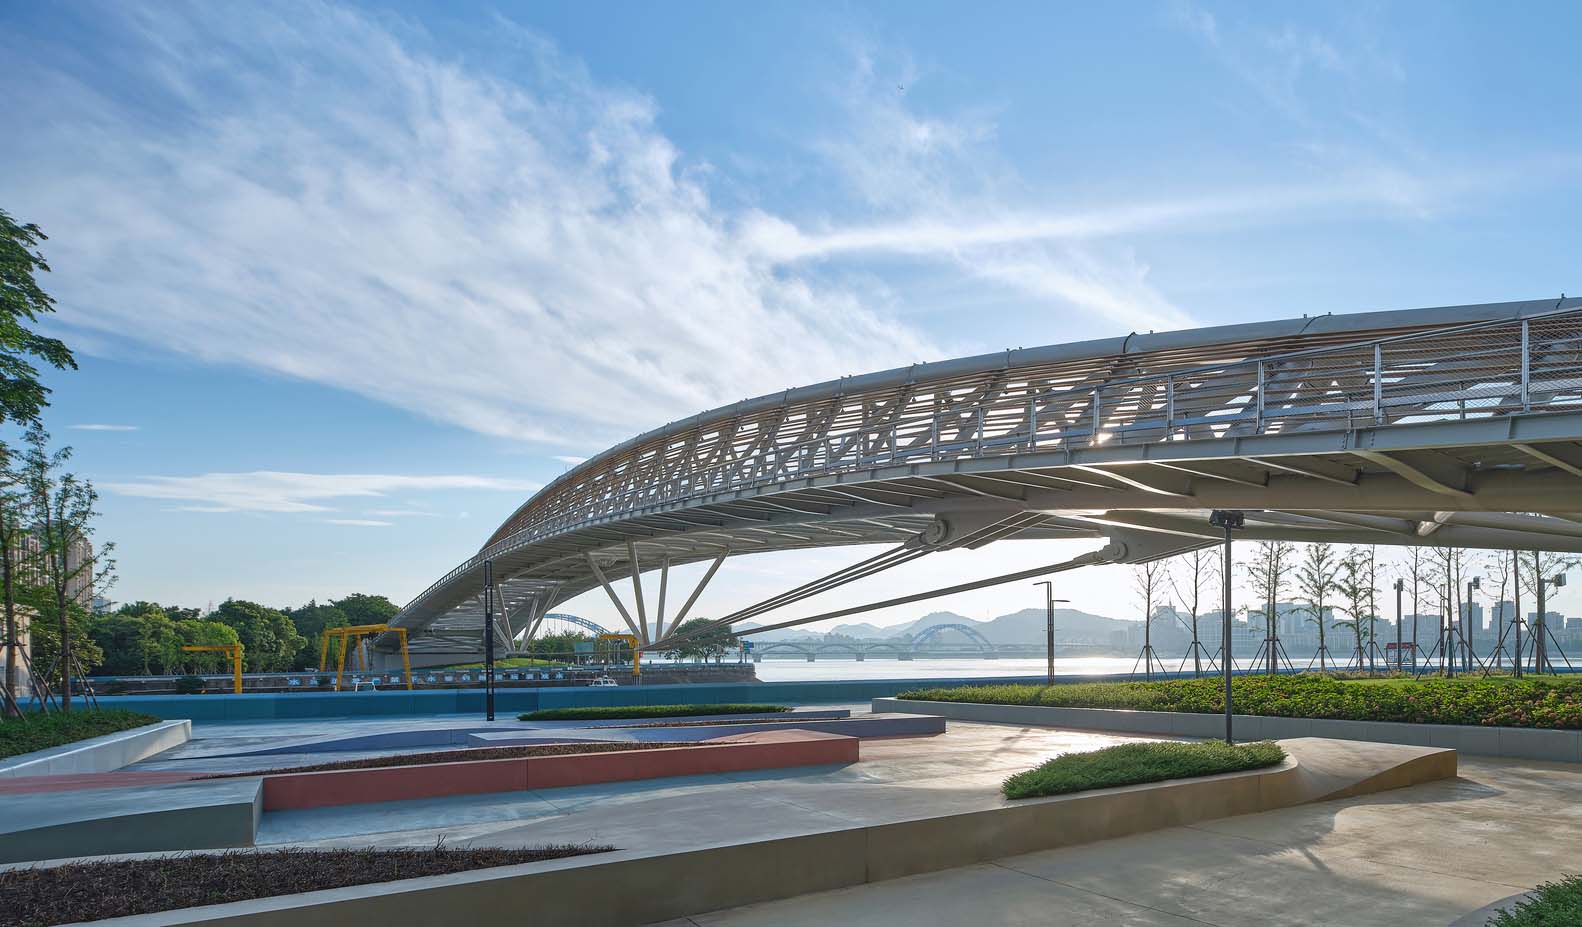 پل ابریشم در فضای عمومی حاشیه رودخانه هانگژو طراحی شده توسط استودیو معماری و طراحی اصلی TJAD